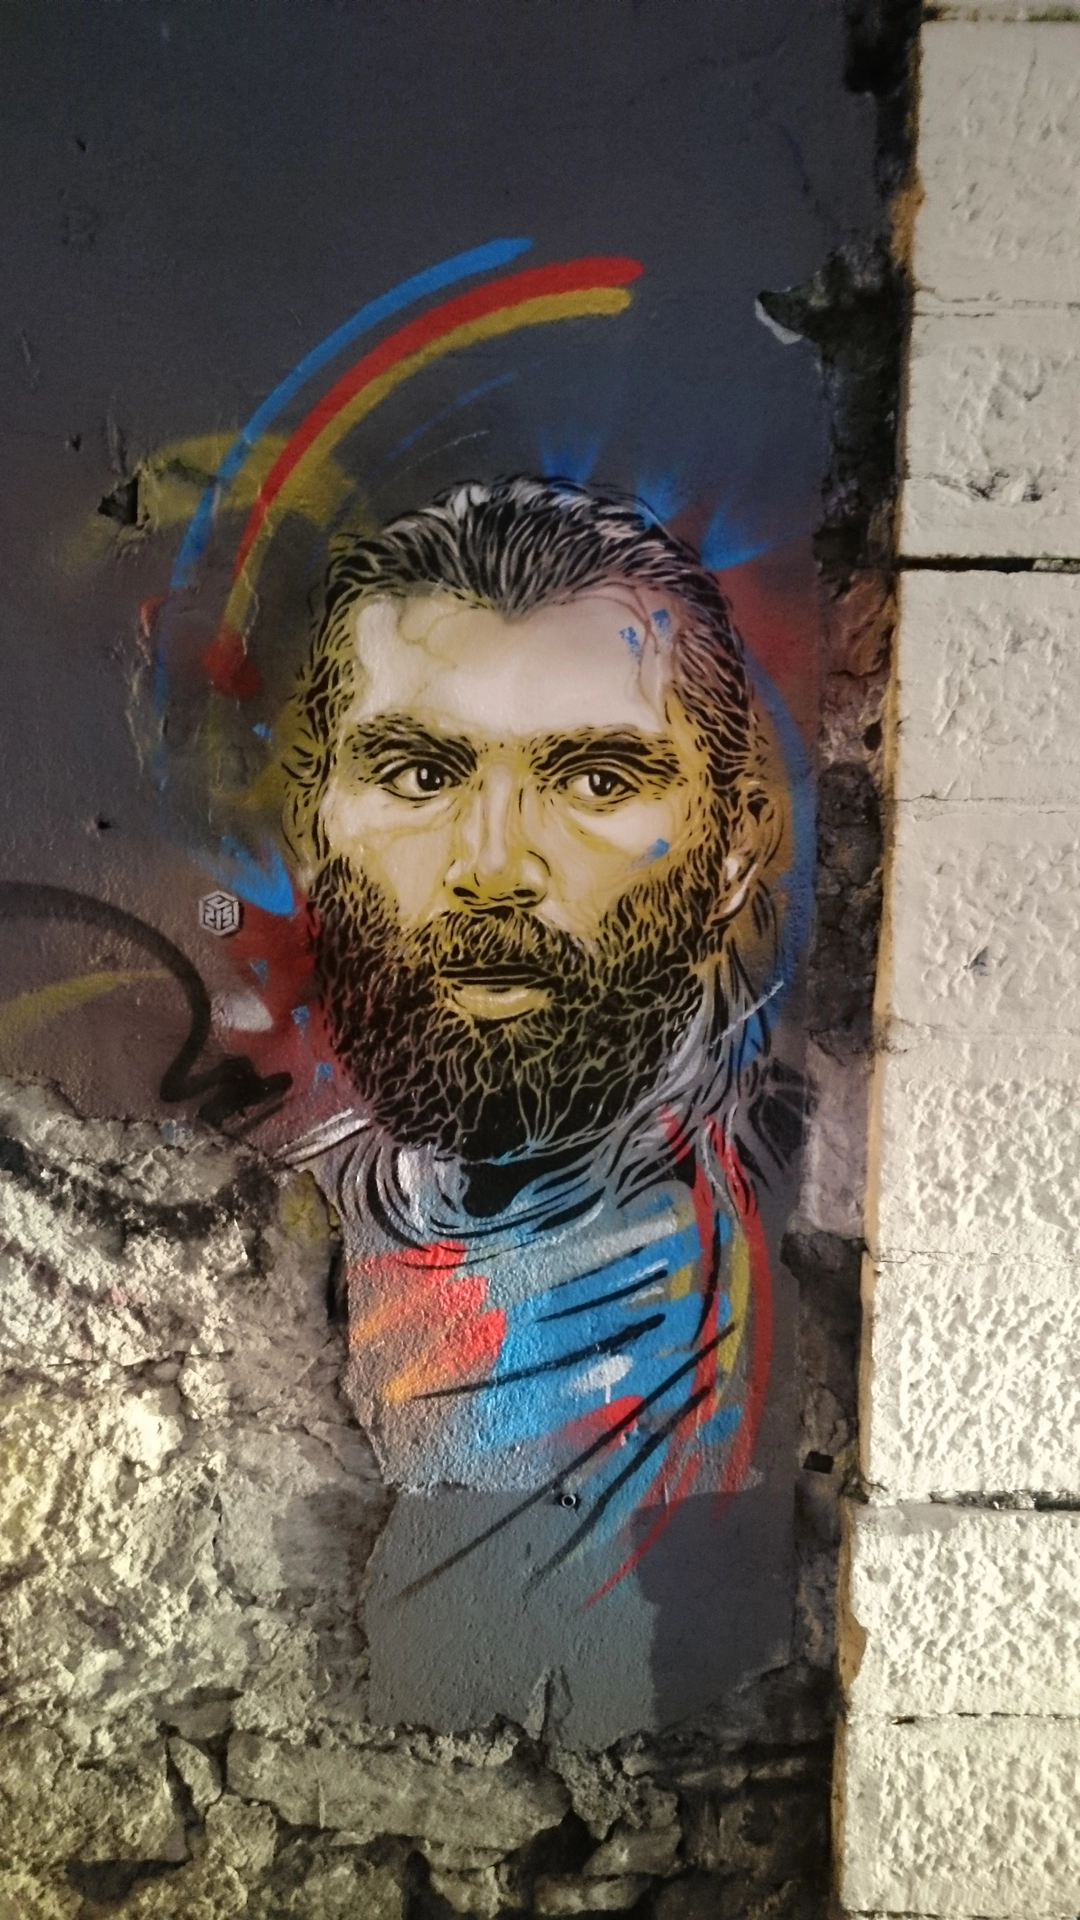 Oeuvre de Street Art réalisée par C215 à Grenoble